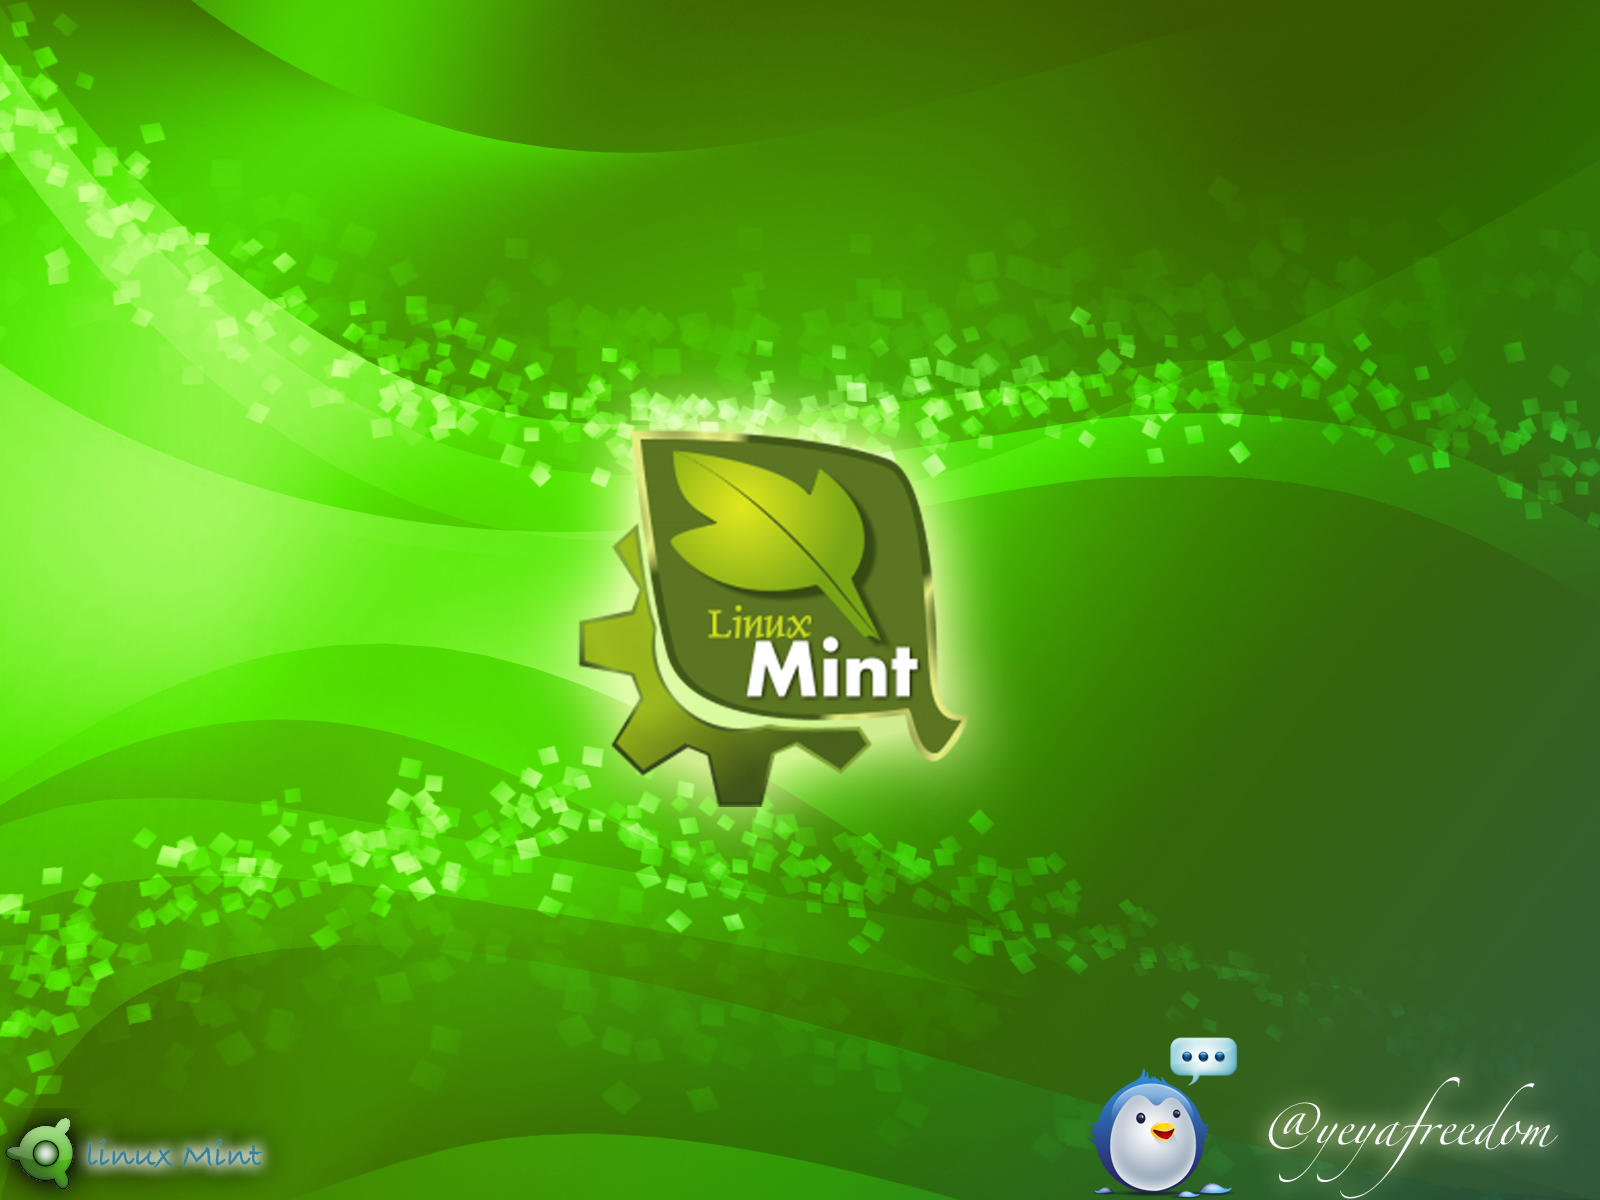 sfondi linux mint,verde,font,immagine dello schermo,giochi,illustrazione